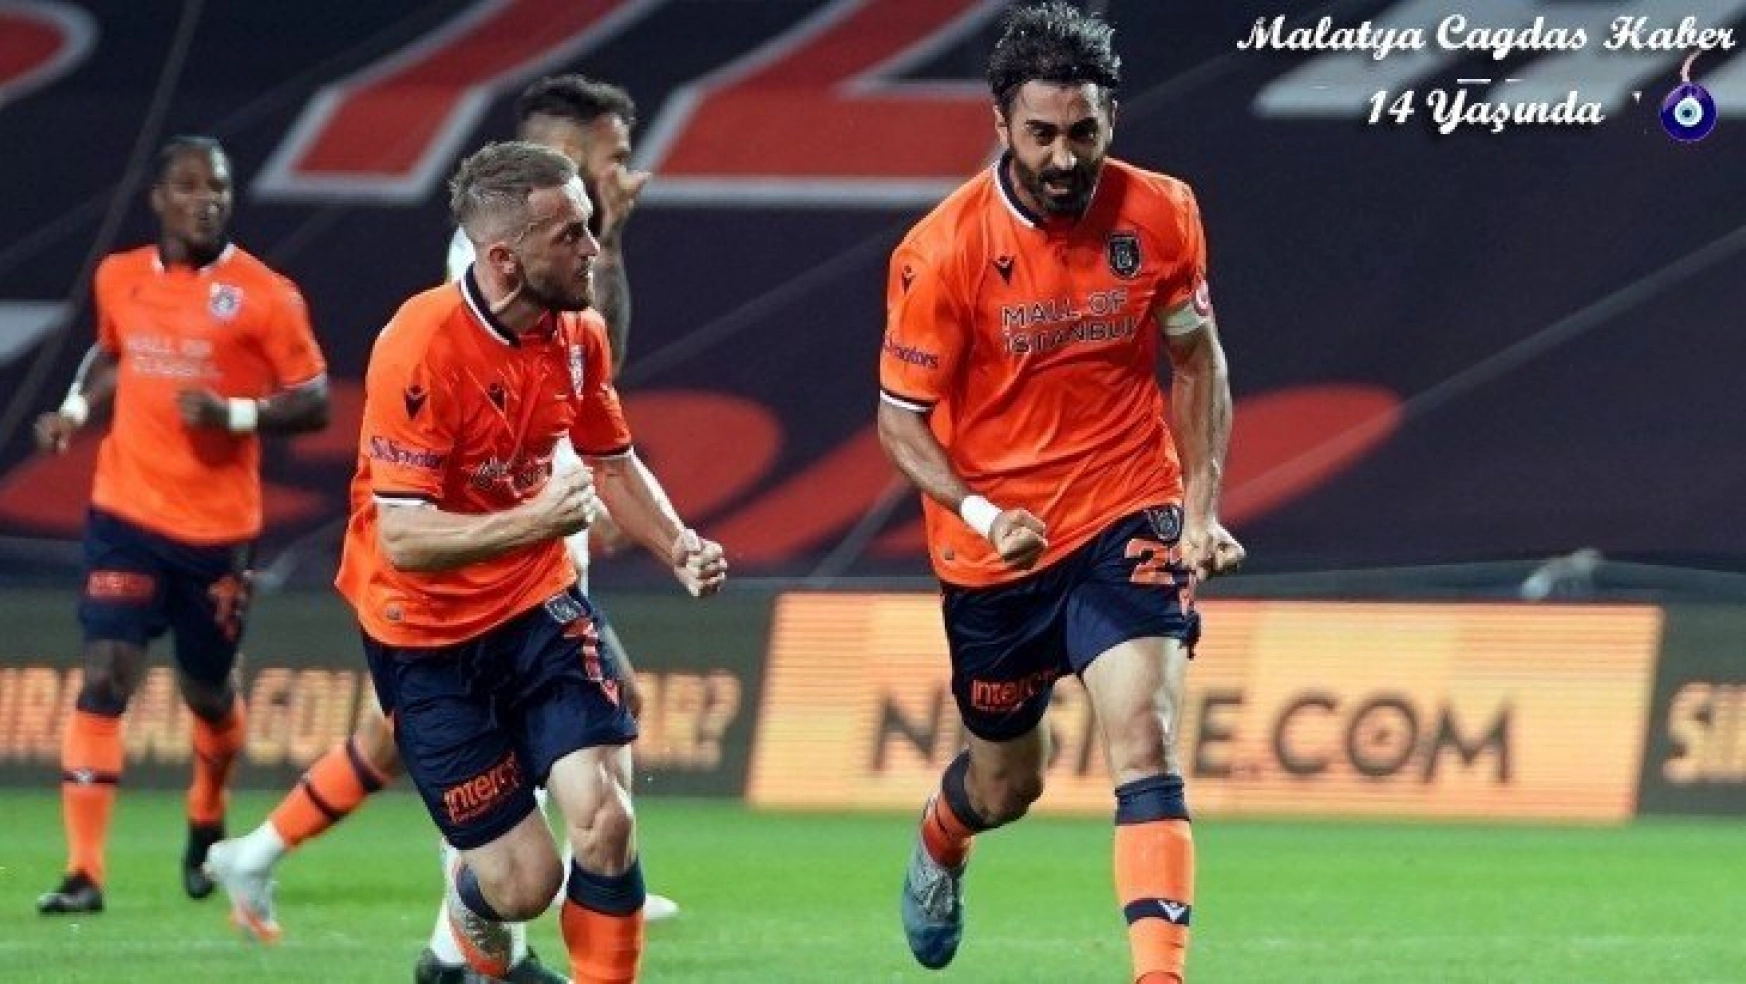 Başakşehir, UEFA Şampiyonlar Ligi gruplarında ilk kez mücadele edecek